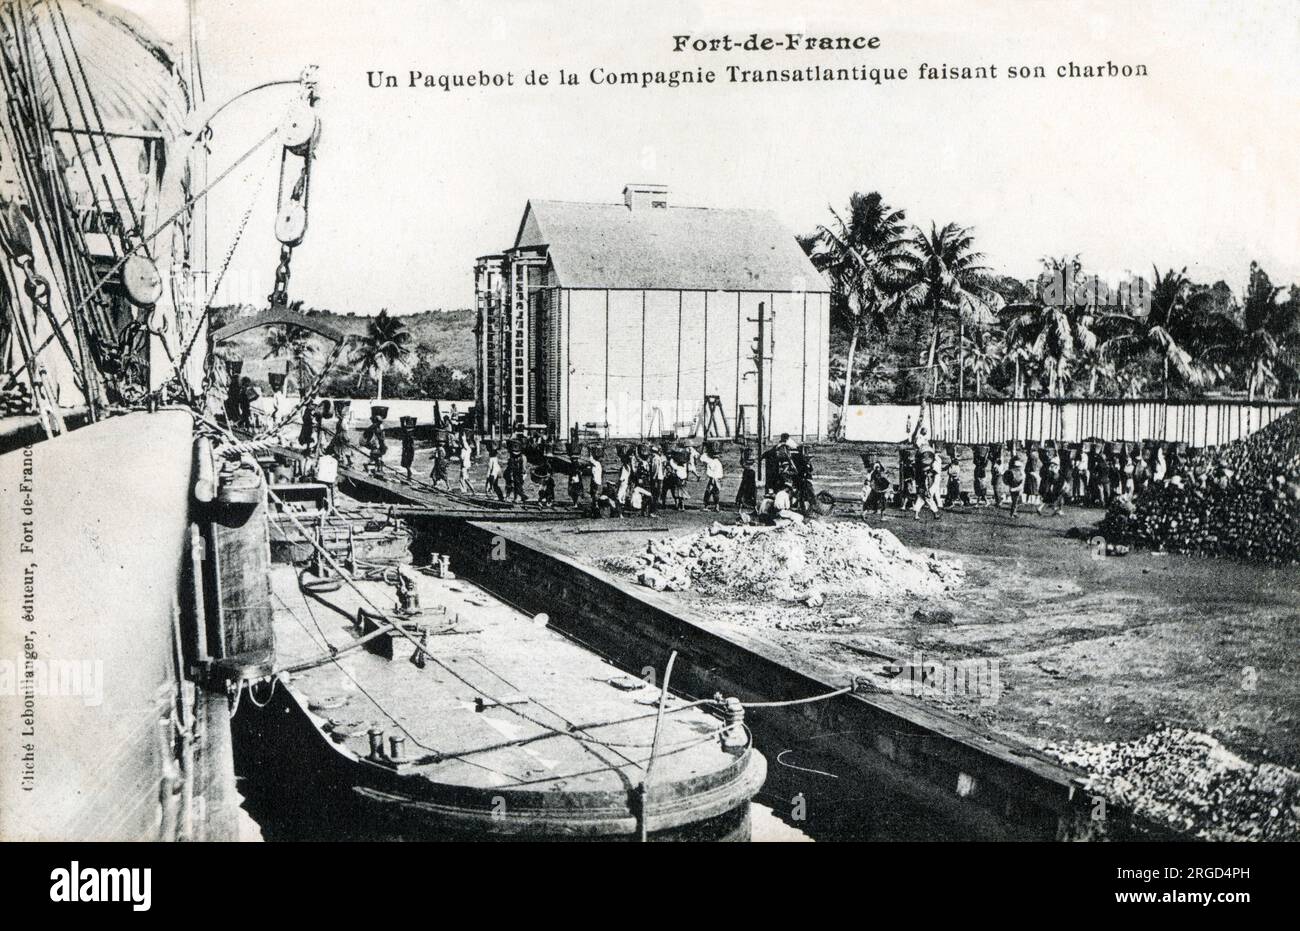 Martinique - fort-de-France - Un bateau Packet prenant le charbon. Banque D'Images